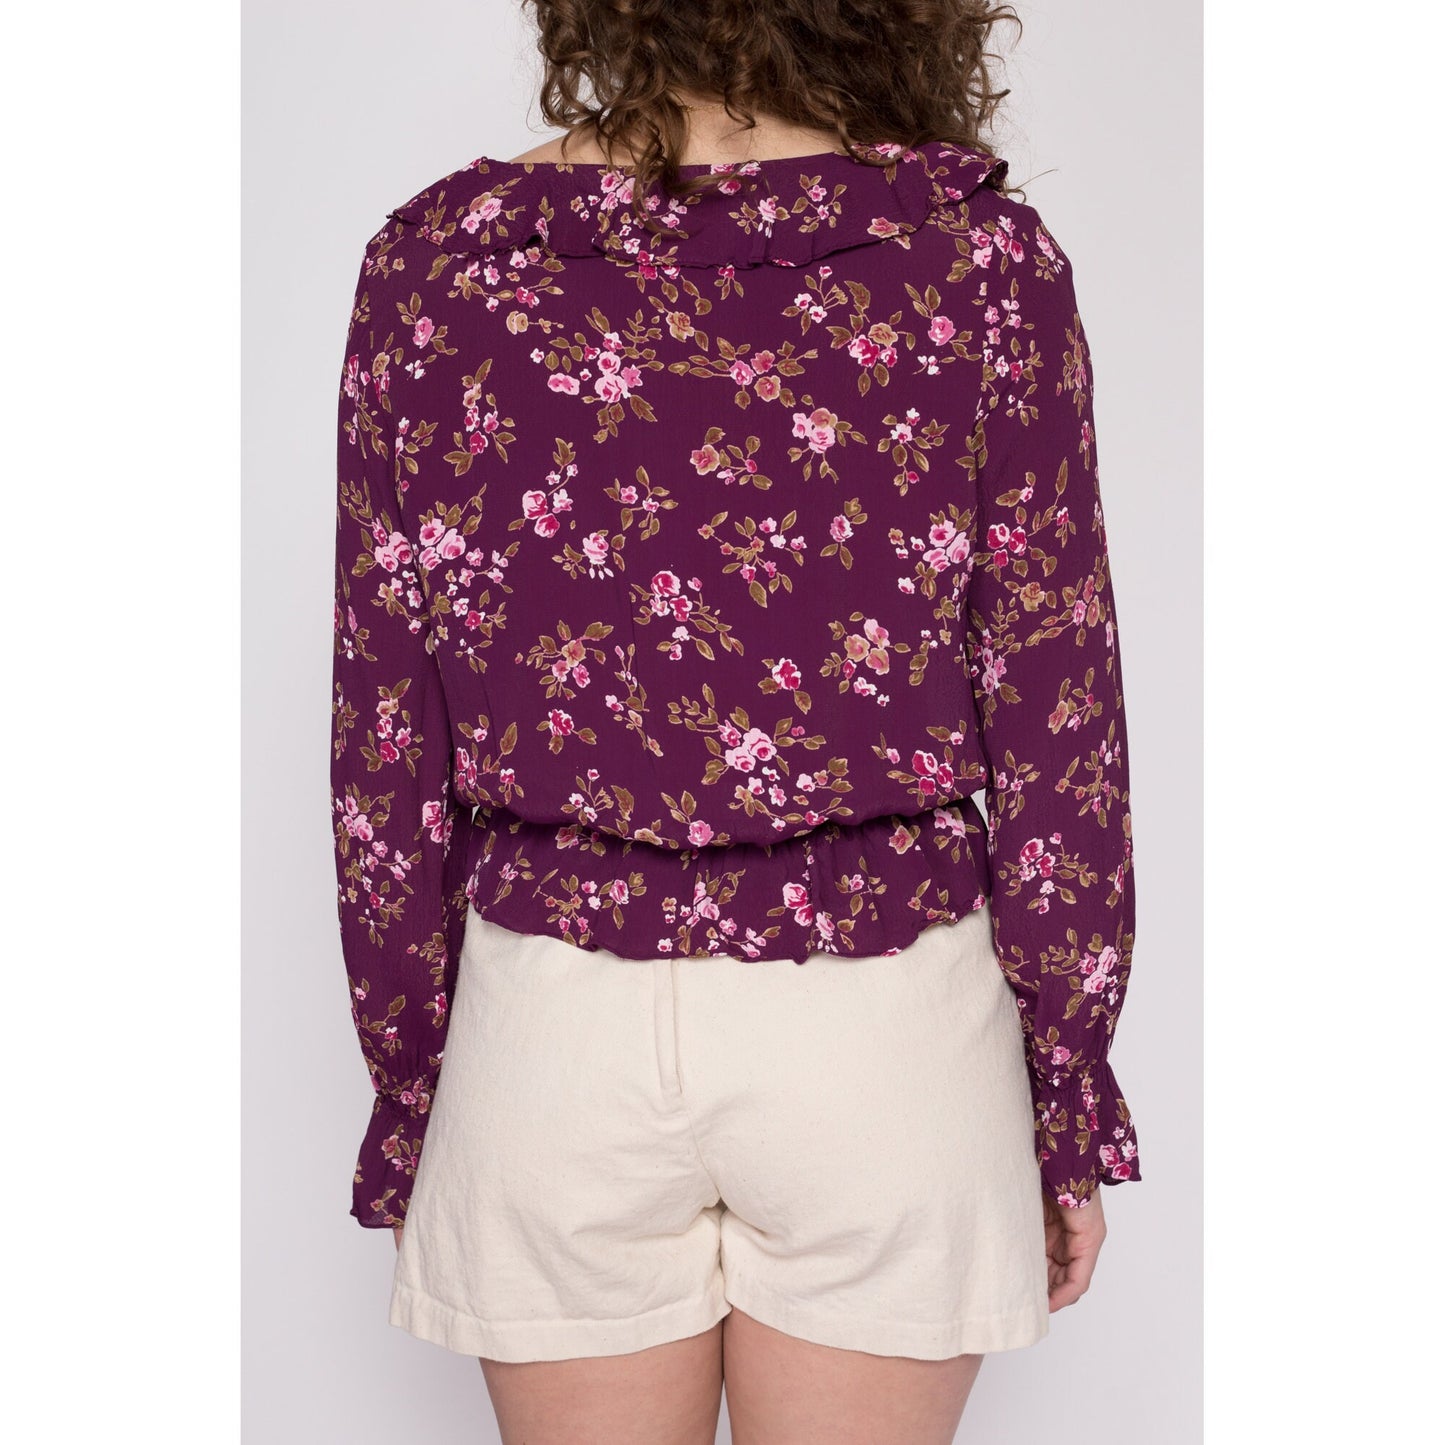 Medium 90s Y2K Boho Purple Floral Blouse | Vintage Ruffle Collar Long Sleeve Crop Top